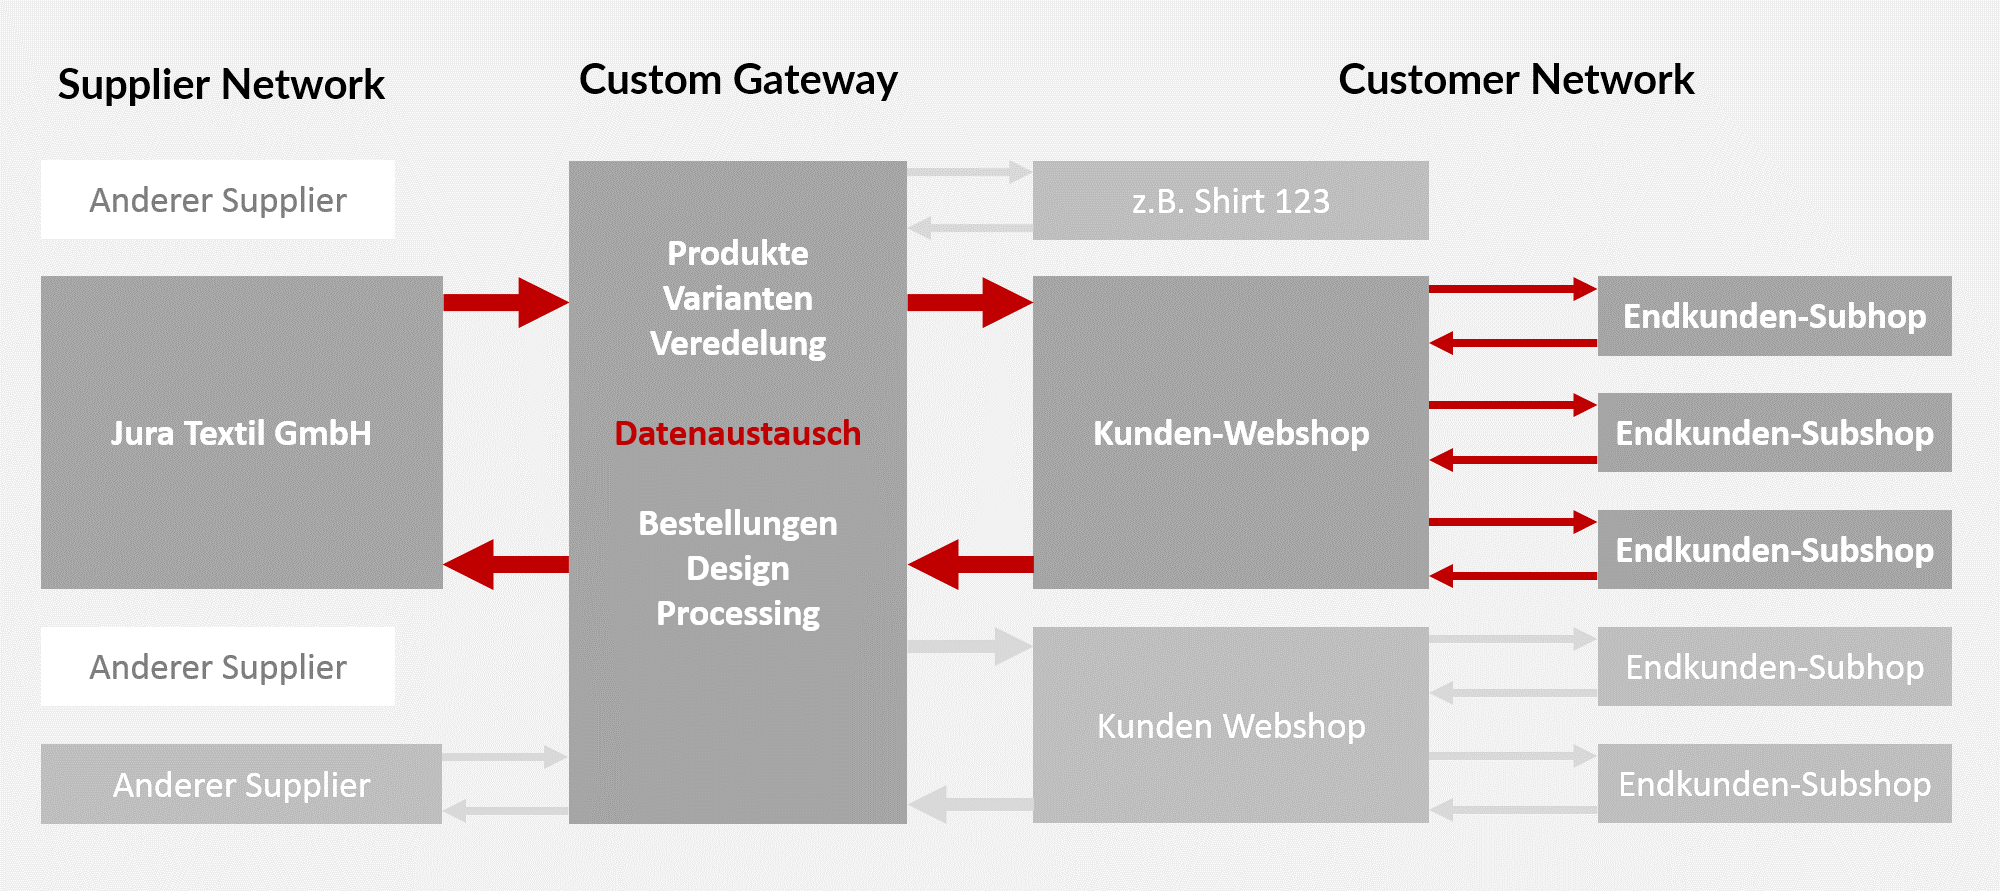 Custom Gateway